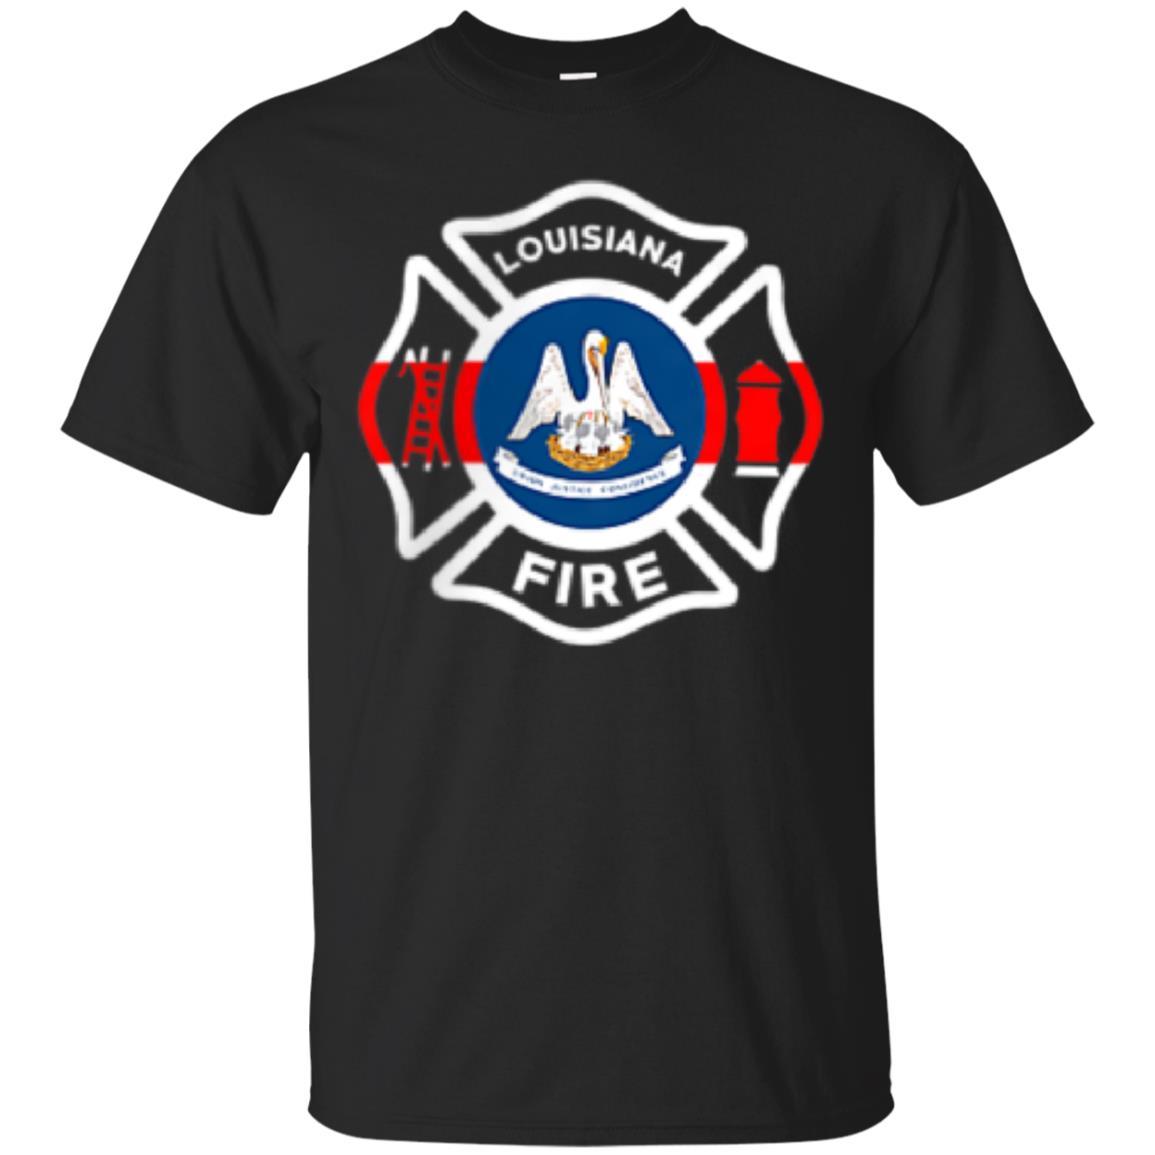 Shop Louisiana Fire Departt Firefighters Fire T Shirt